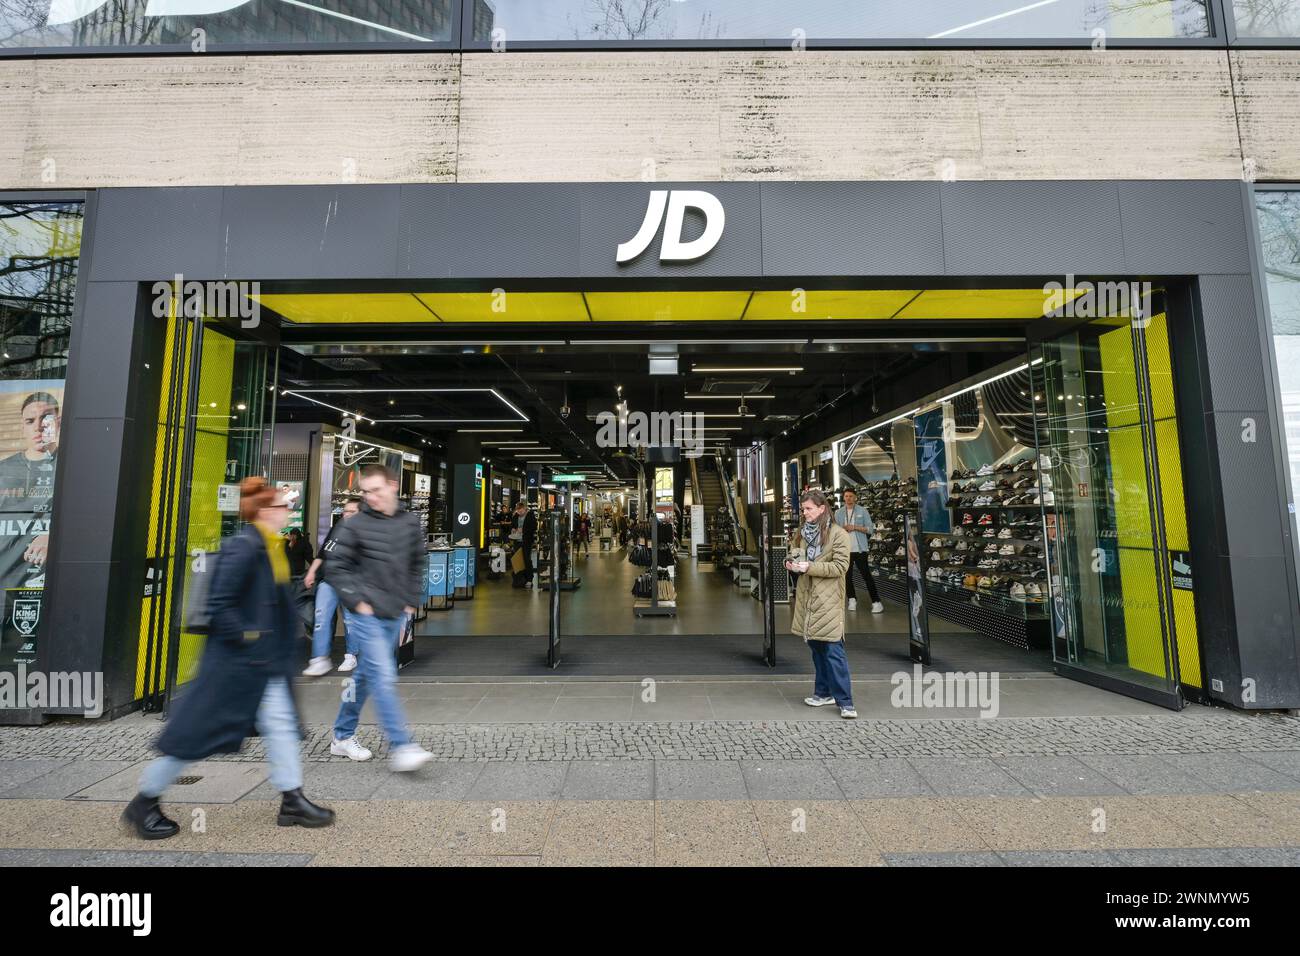 JD Sportschuhe, Geschäft, Tauentzienstraße, Charlottenburg, Berlin, Deutschland Stock Photo